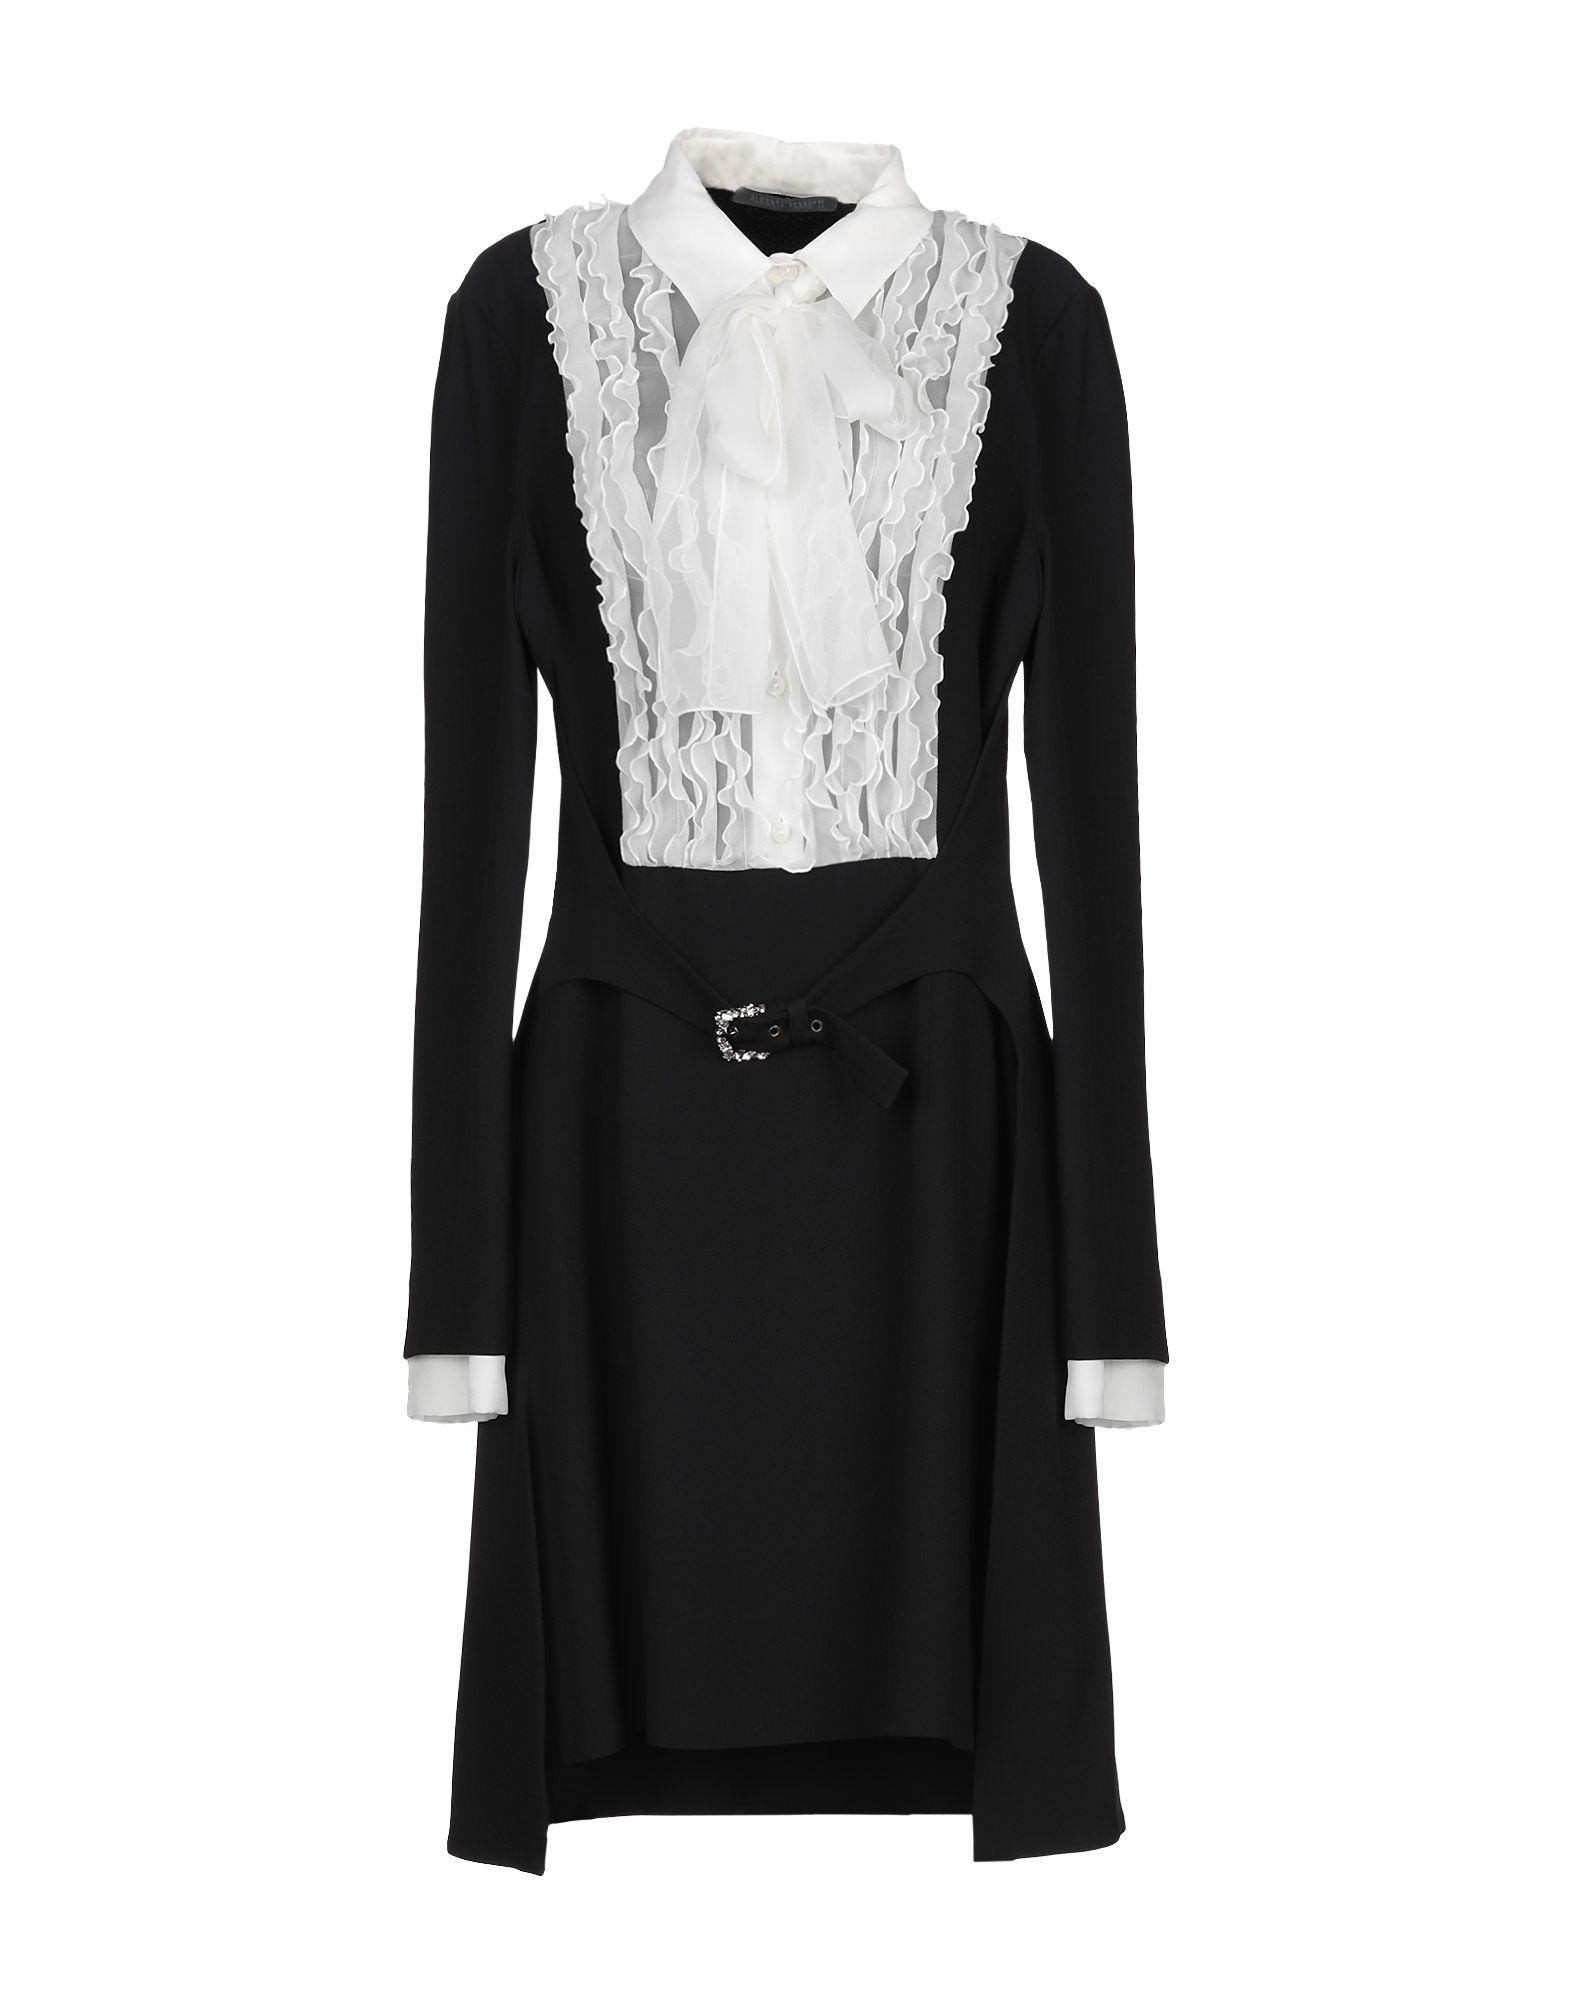 Alberta Ferretti Chiffon Short Dress in Black - Lyst